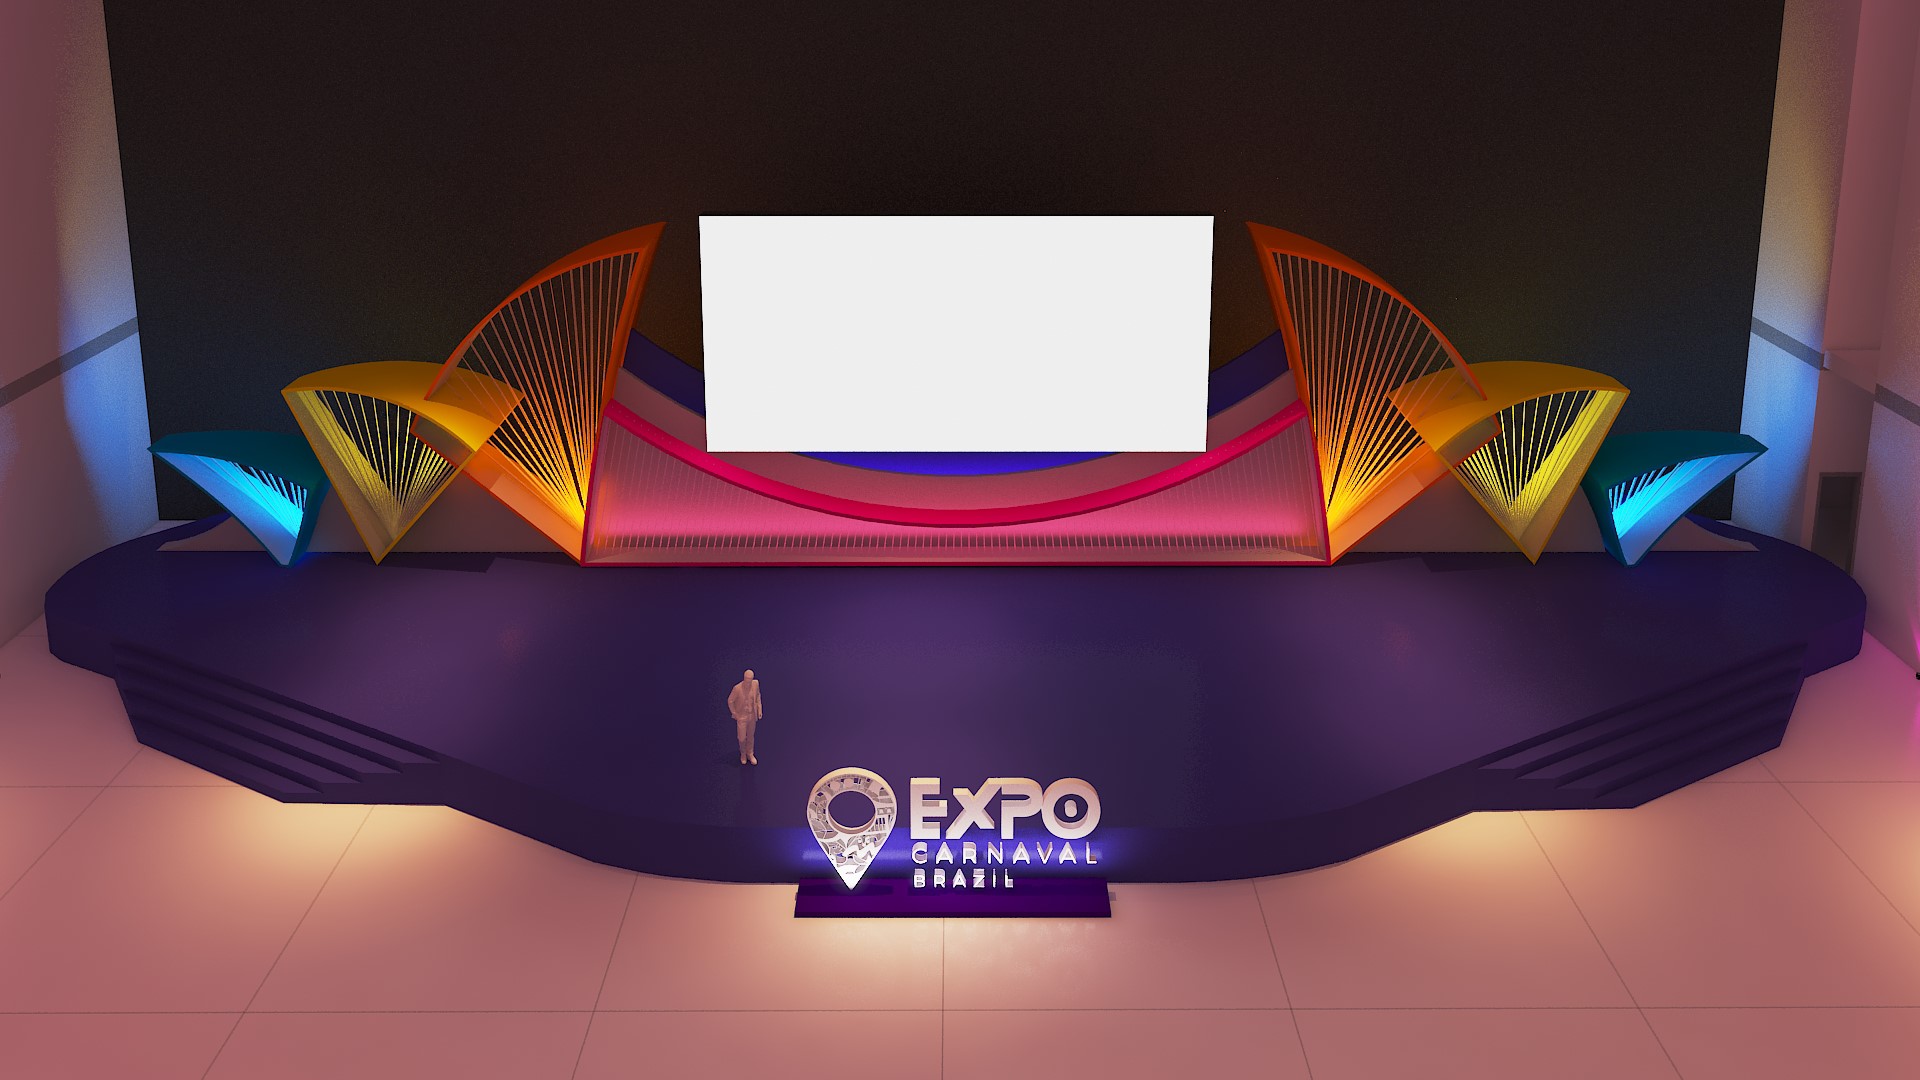 Expo Carnaval Brazil 2023 anuncia palco com 35 metros e passarela abre alas